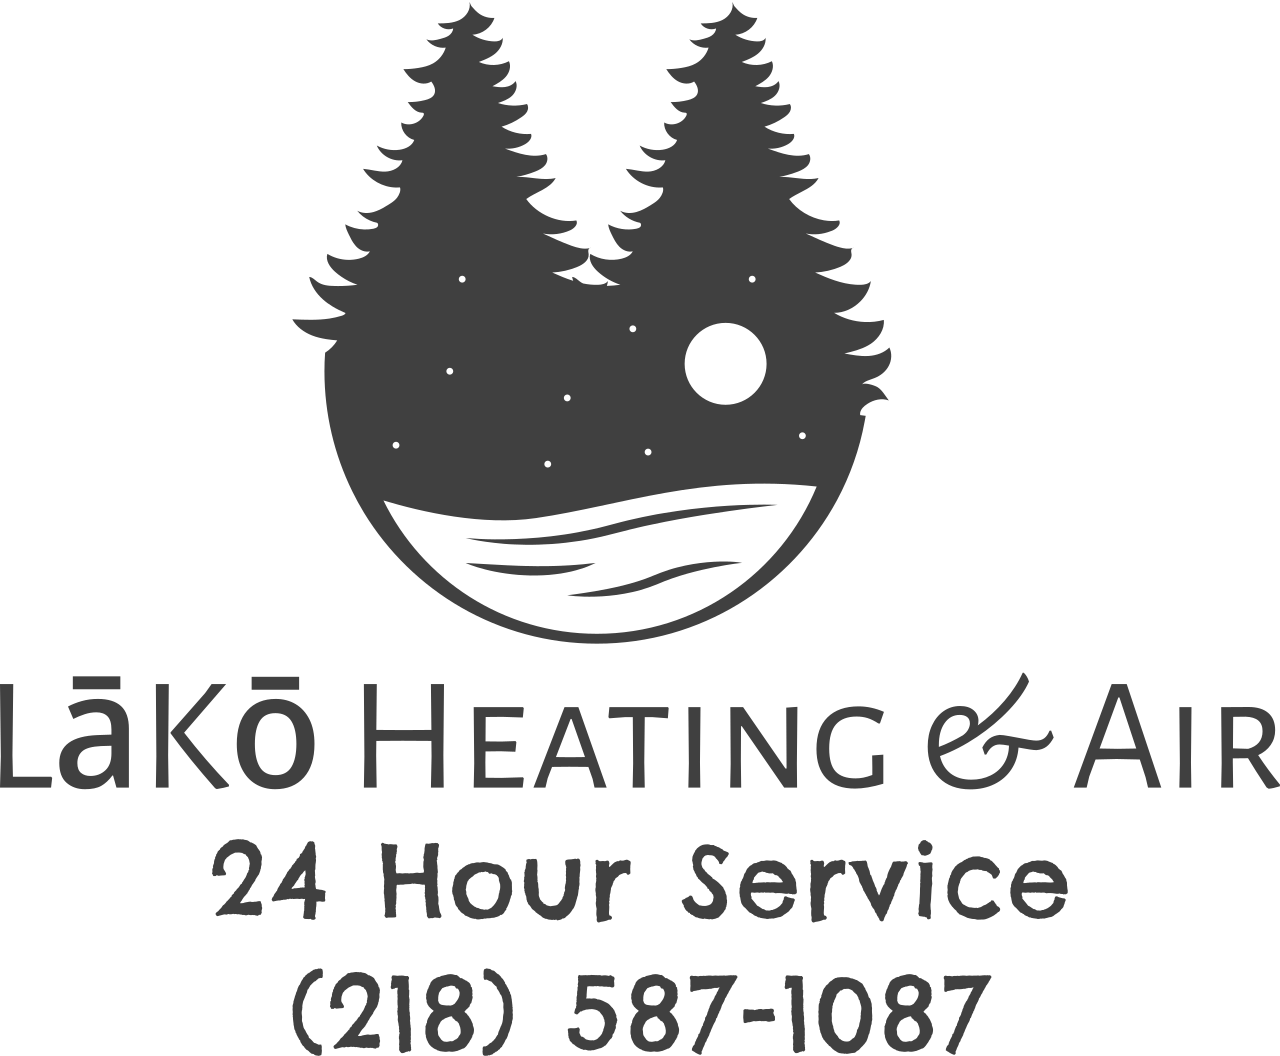 LāKō Heating & Air 's logo